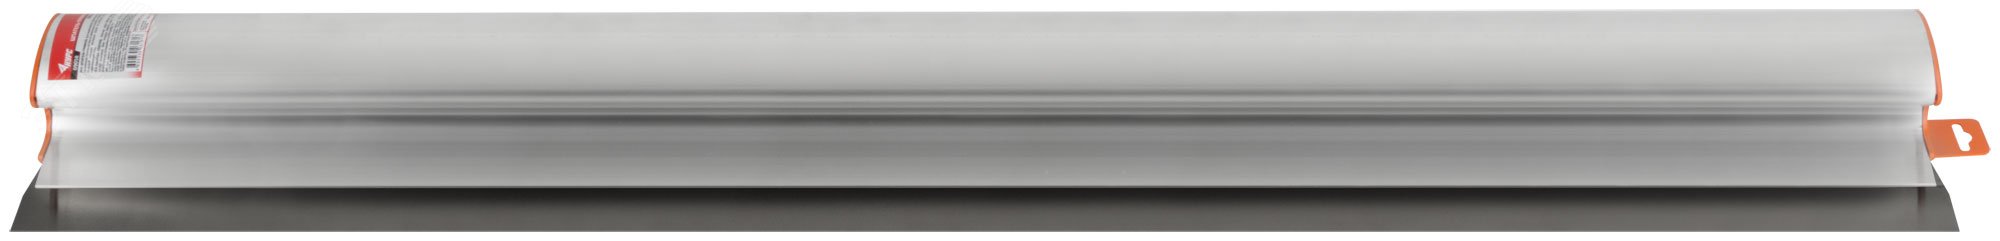 Шпатель-Правило Профи, нержавеющая сталь с алюминиевой ручкой 1000 мм 09058 КУРС РОС - превью 4